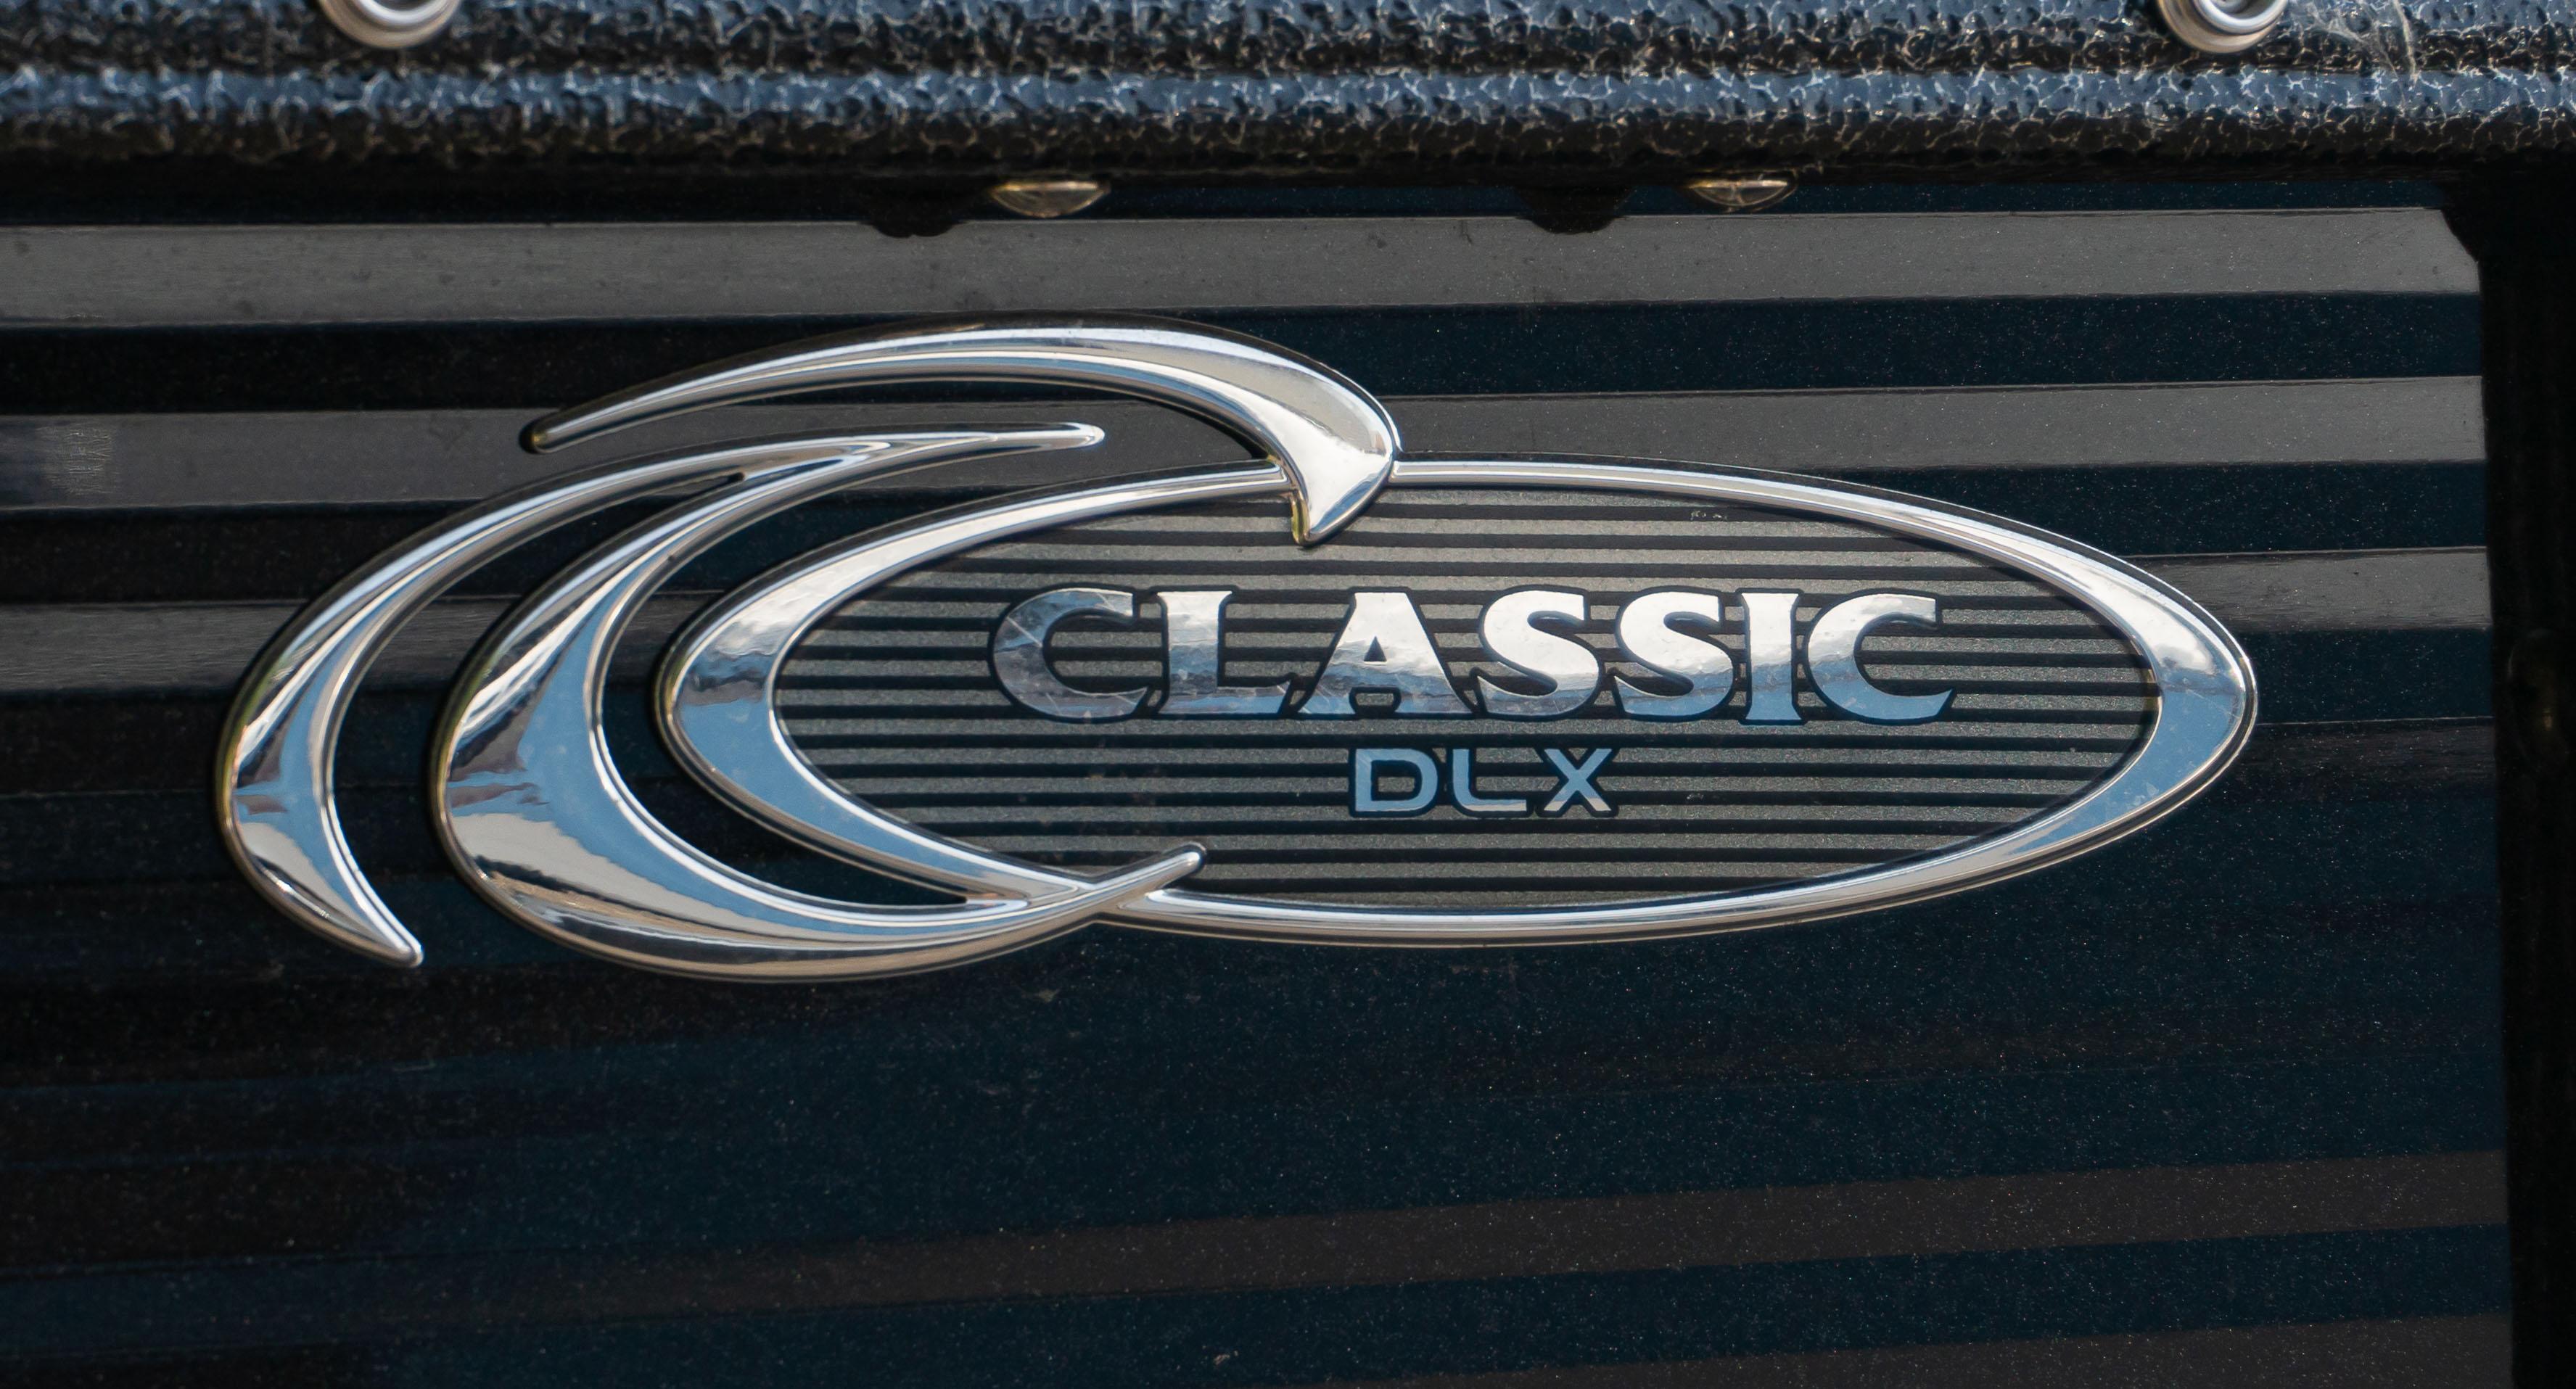 2023 Crest Classic DLX 220